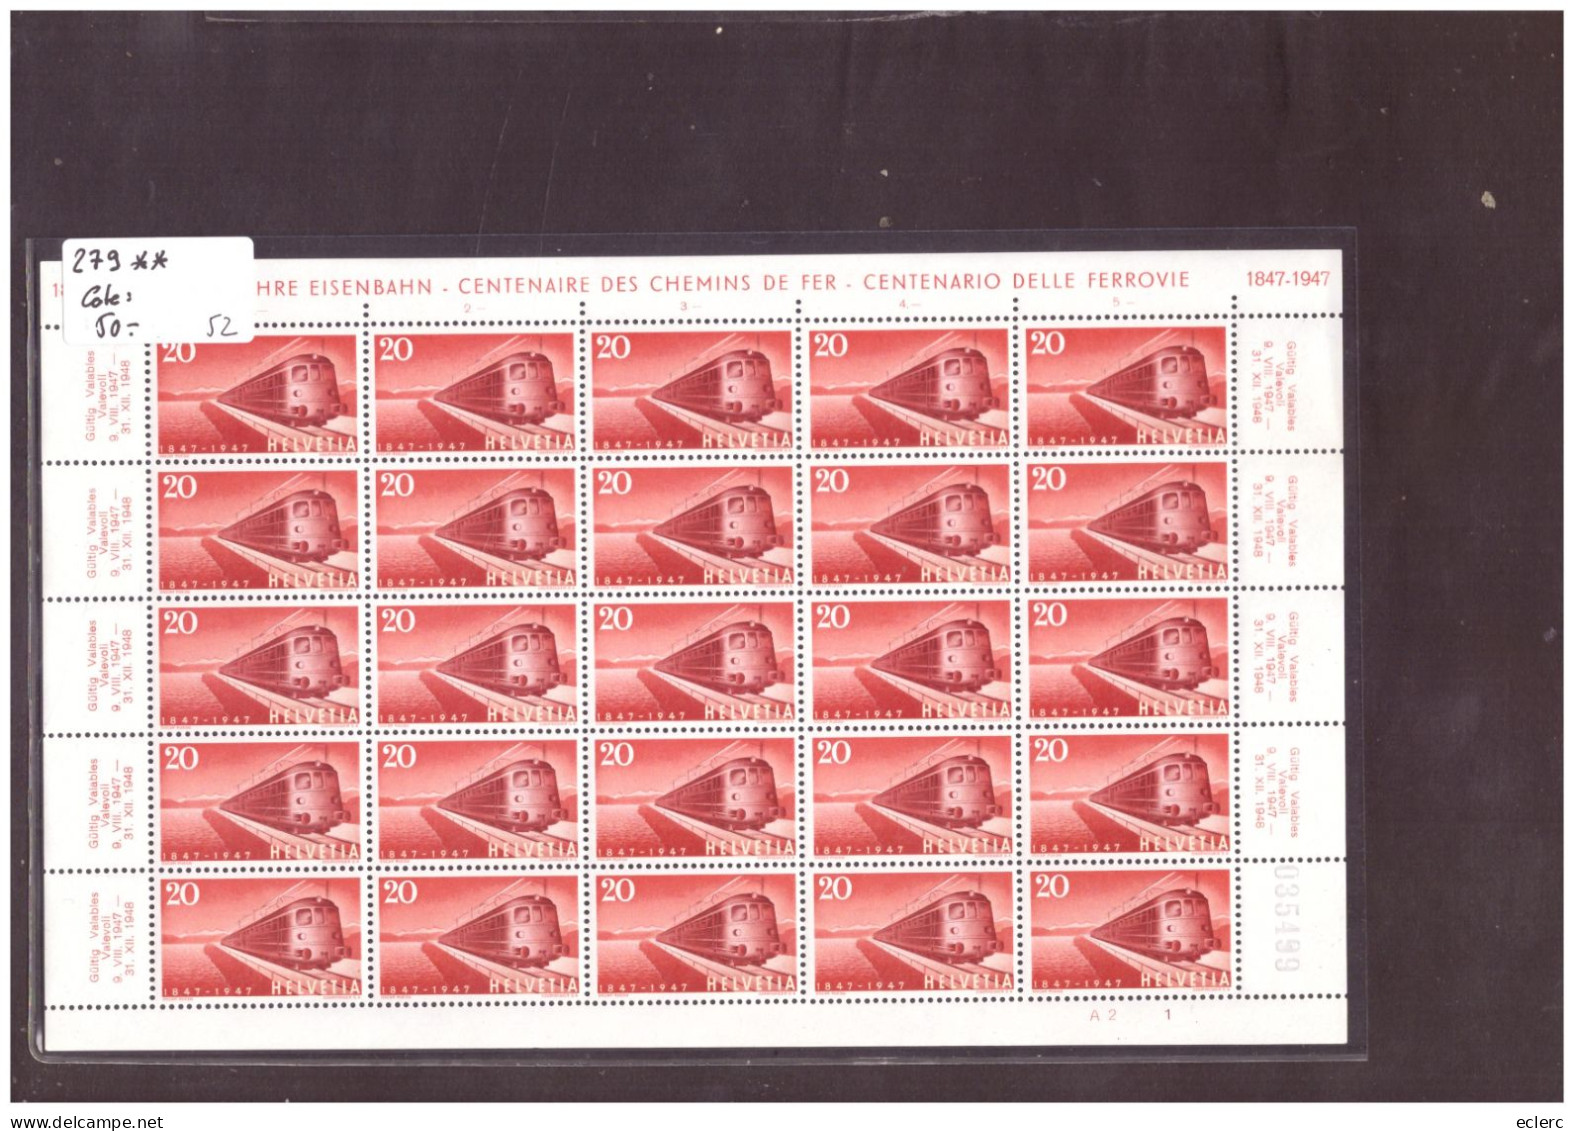 FEUILLE COMPLETE No 279  EN PARFAIT ETAT - CENTENAIRE DES CHEMINS DE FER 1847-1947 - COTE: 50.- - Blocks & Sheetlets & Panes